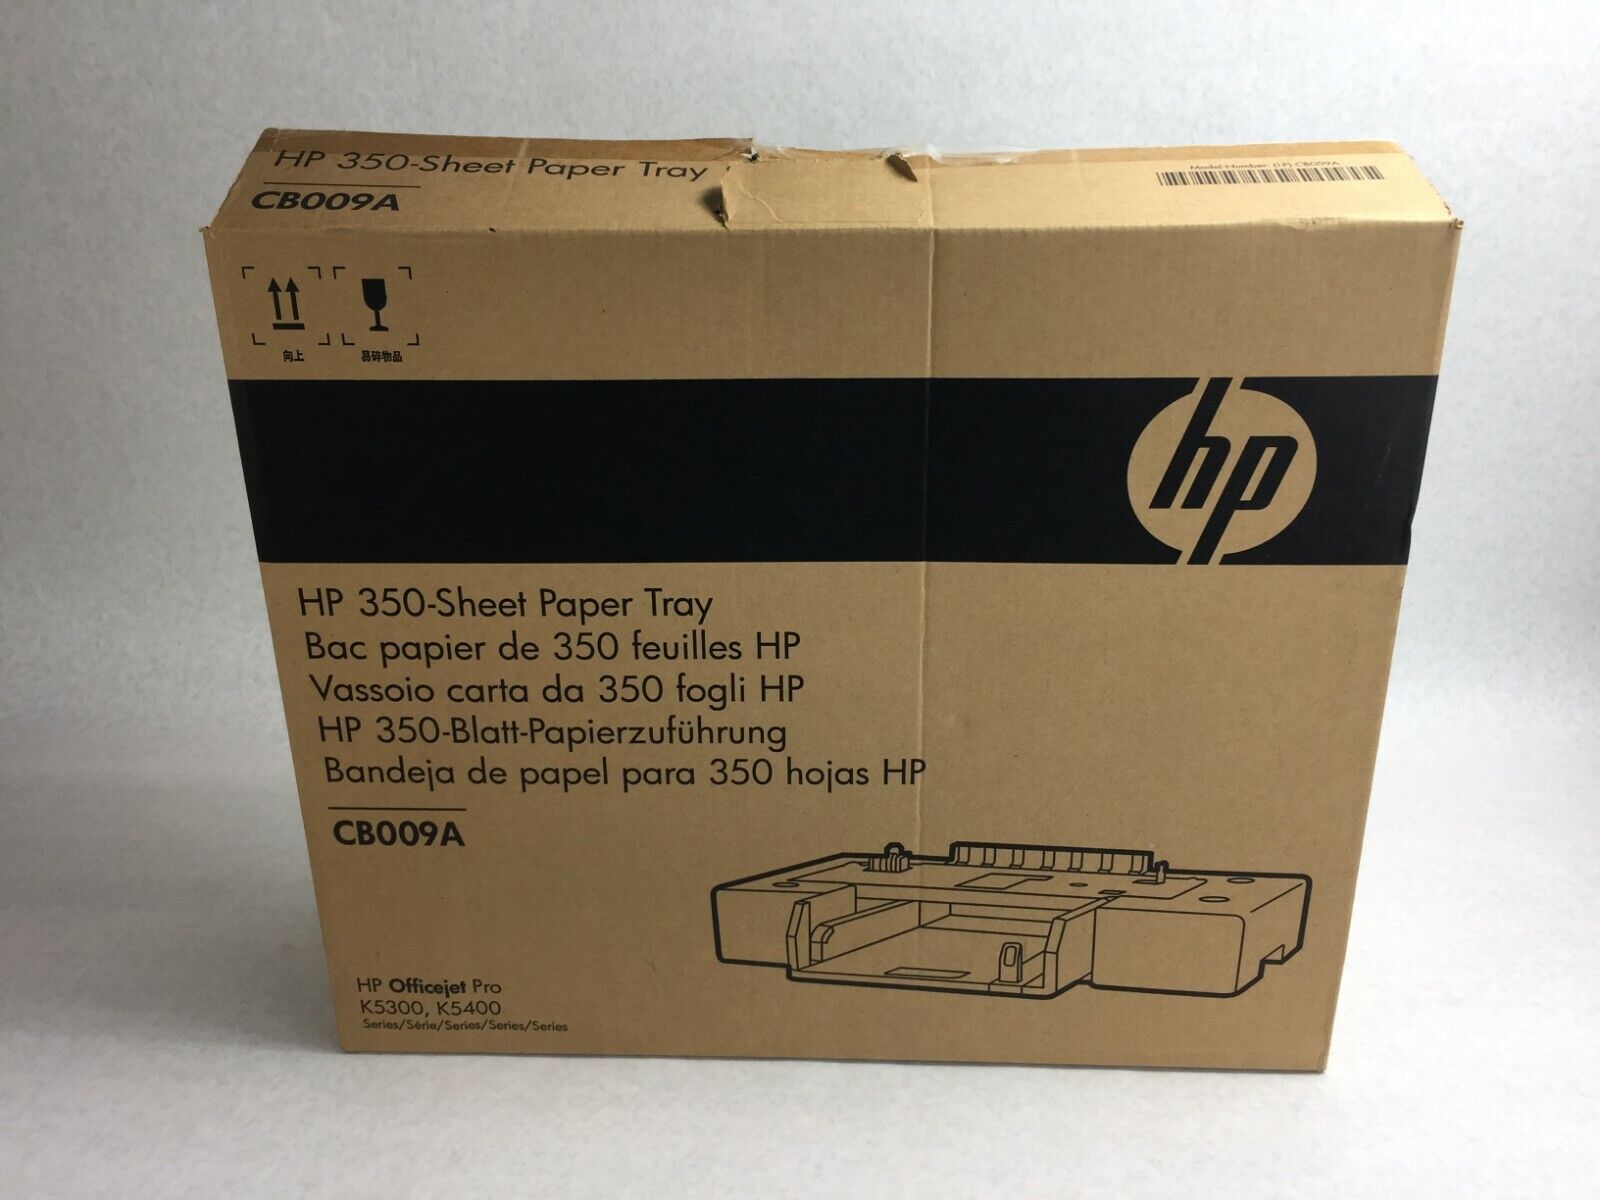 HP Officejet Pro K5300 K5400  350 Sheet Paper Tray  CB009A   NIB